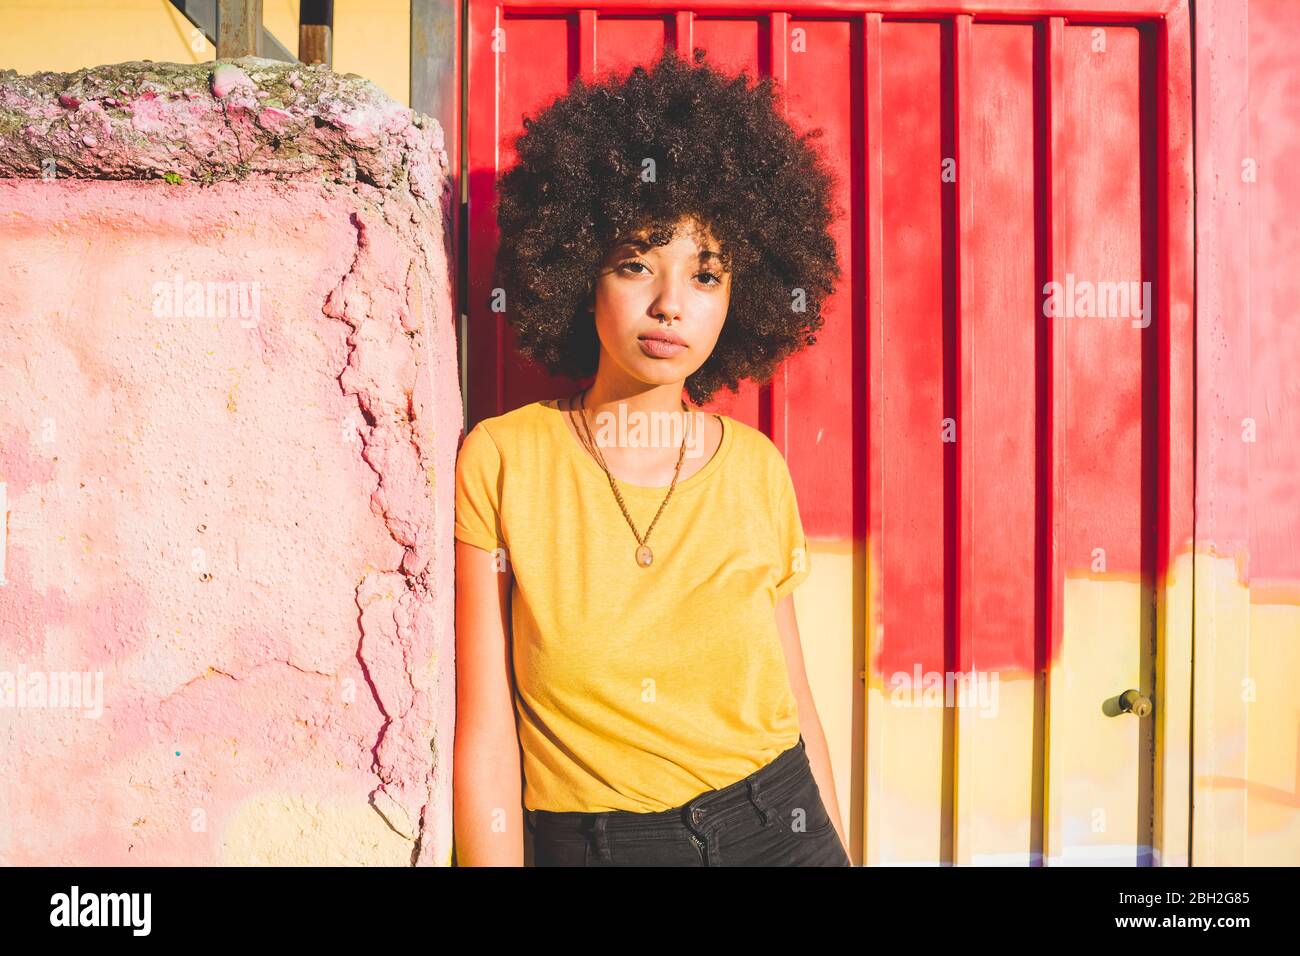 Porträt einer jungen Frau mit afro Frisur an einer Wand gelehnt Stockfoto